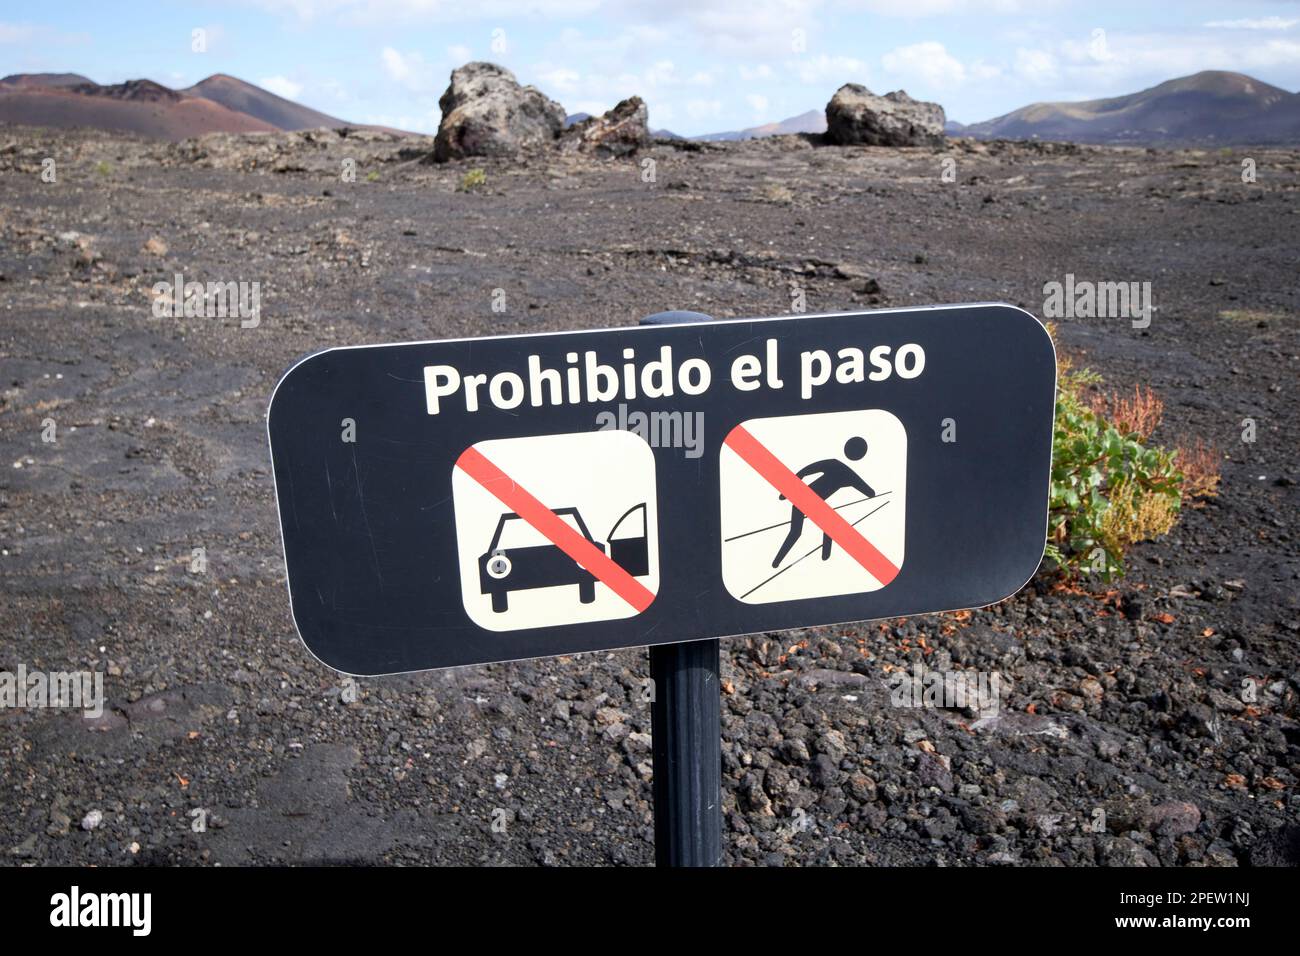 prohibido el paso no driving no walking in lava fields nature reserve parque nacional de timanfaya Lanzarote, Canary Islands, Spain Stock Photo